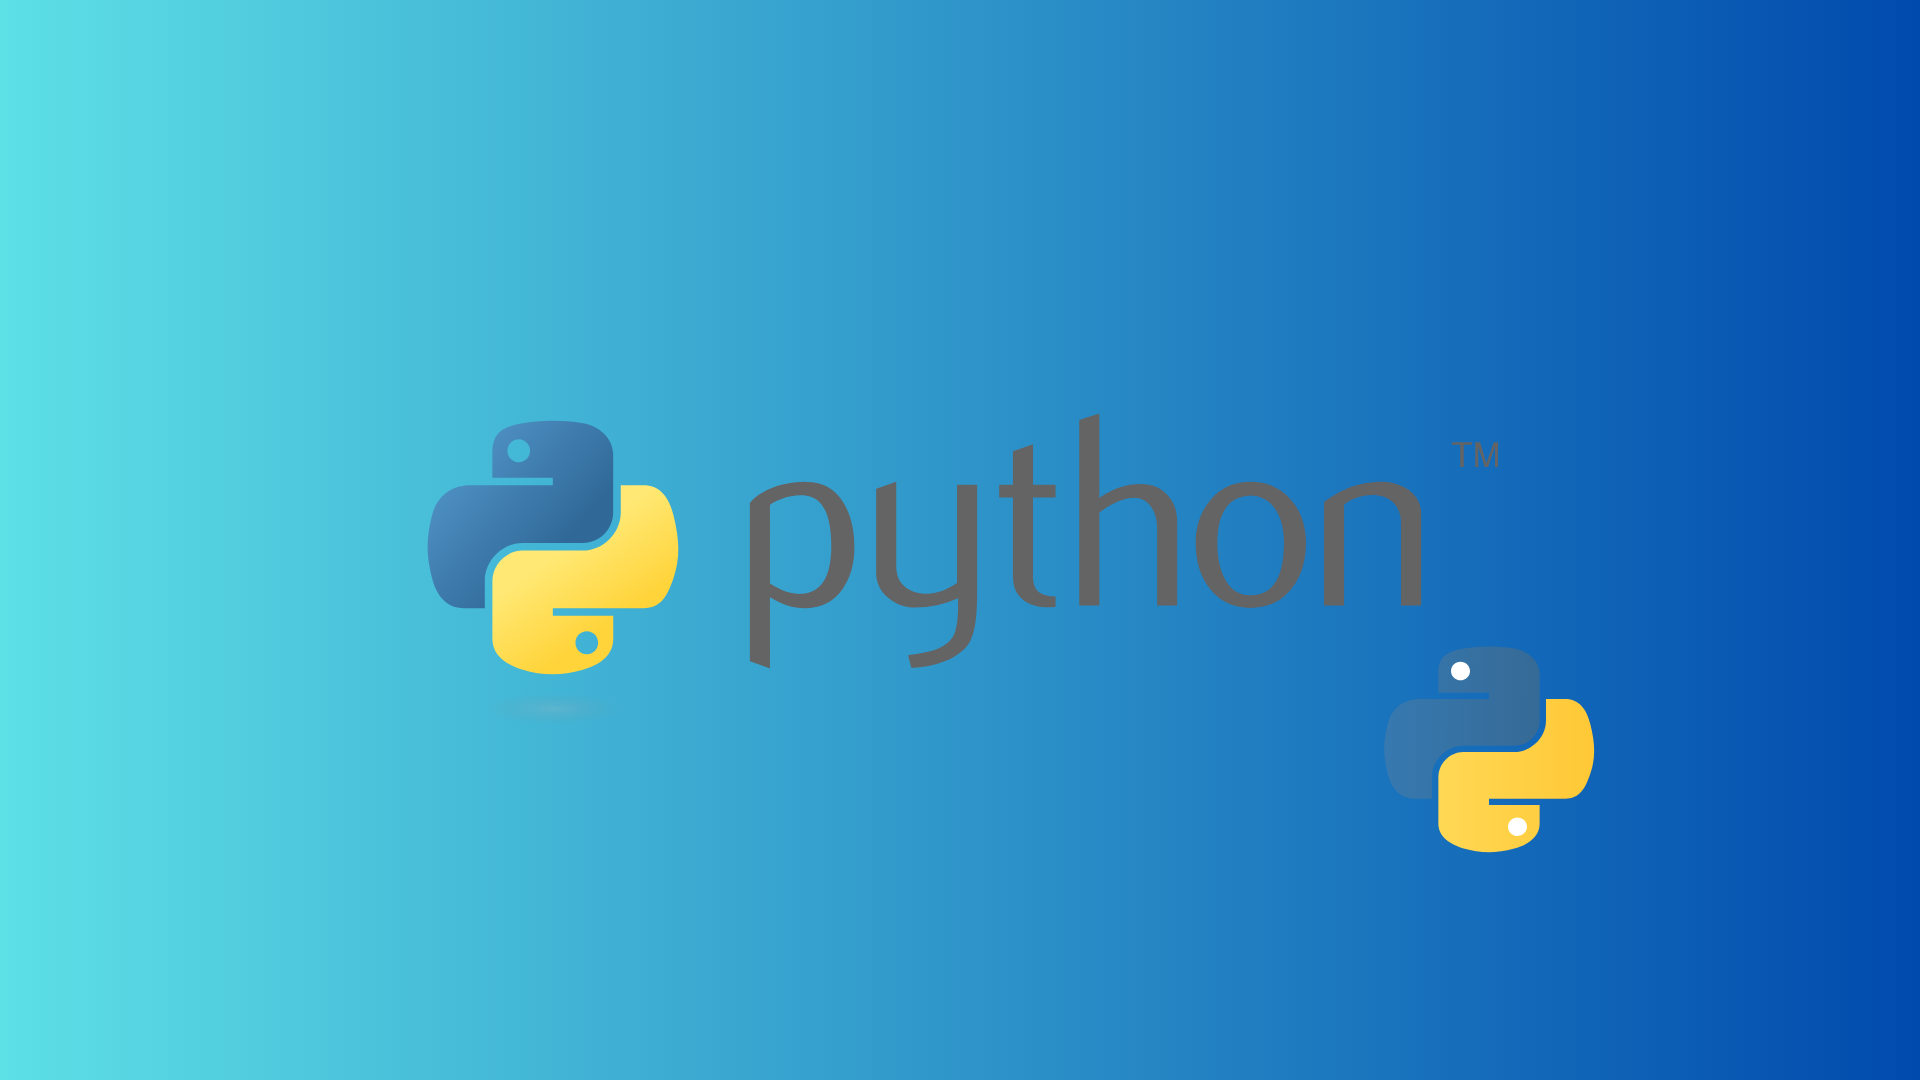 Si vous cherchez une formation à Python pour vous aider à vous perfectionner dans le domaine de la programmation, vous avez peut-être déjà parcouru de nombreuses pages sur le sujet.